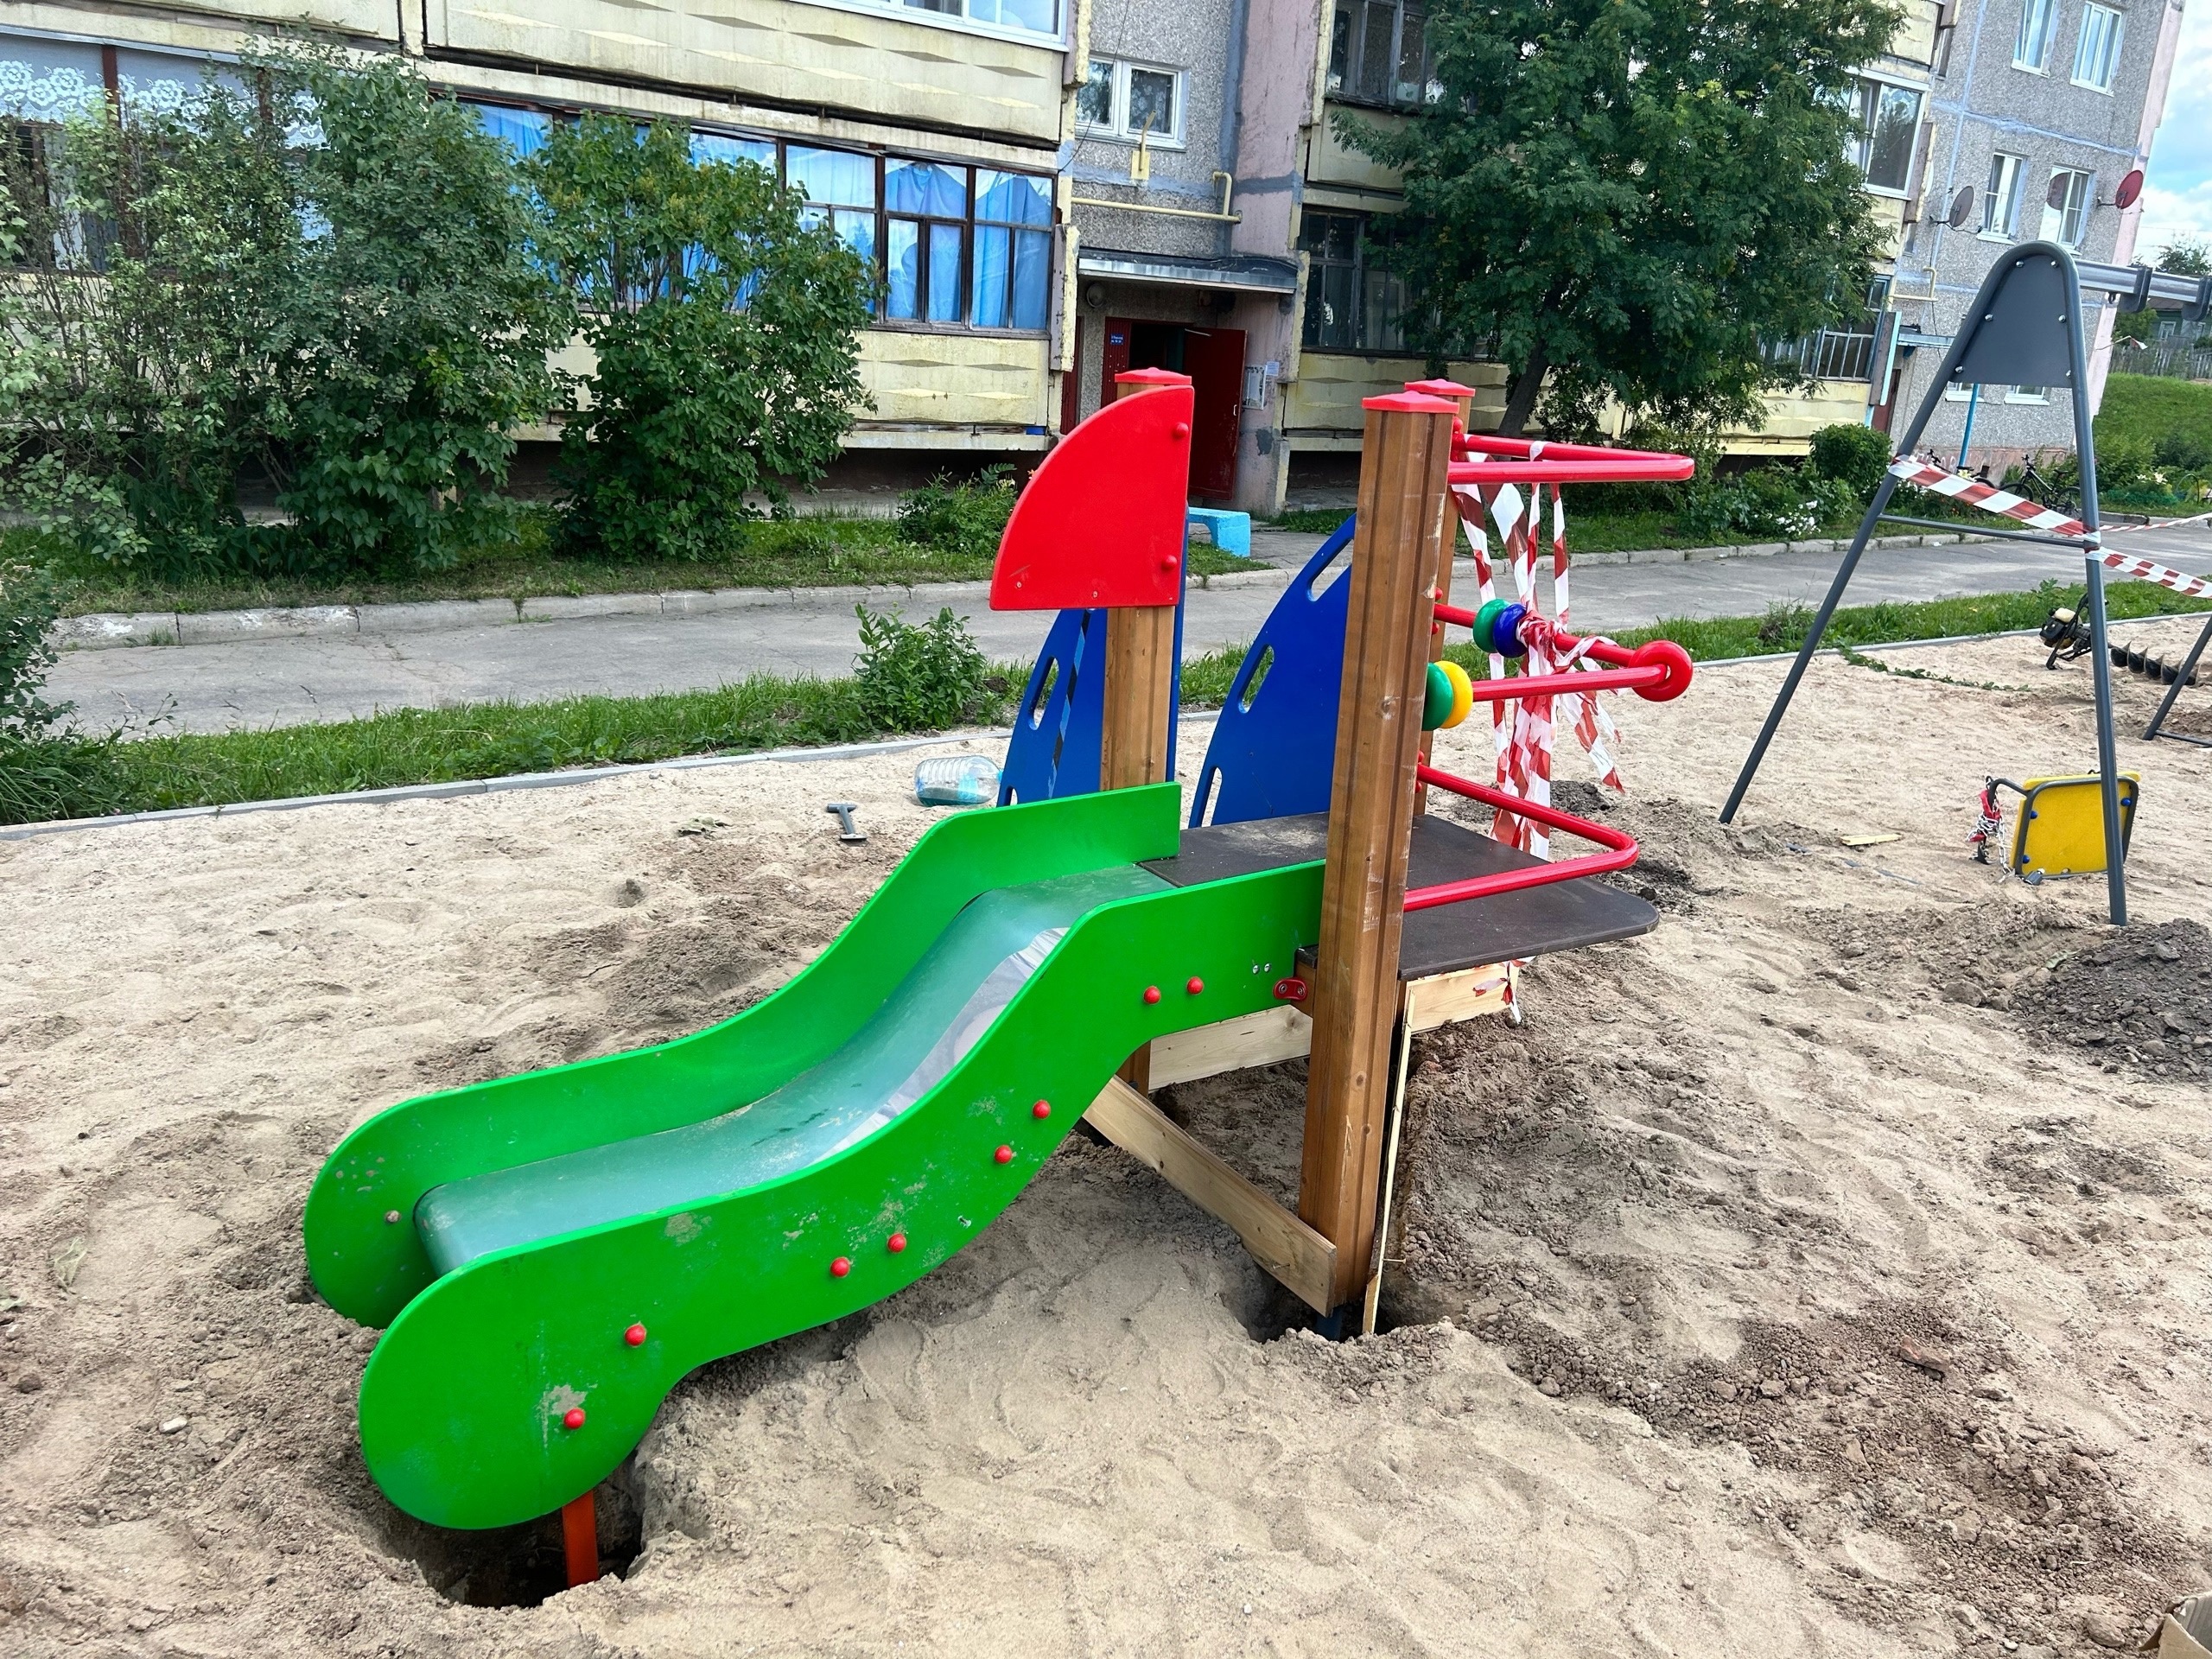 Новое современное оборудование появилось на детской площадке в Яганово.